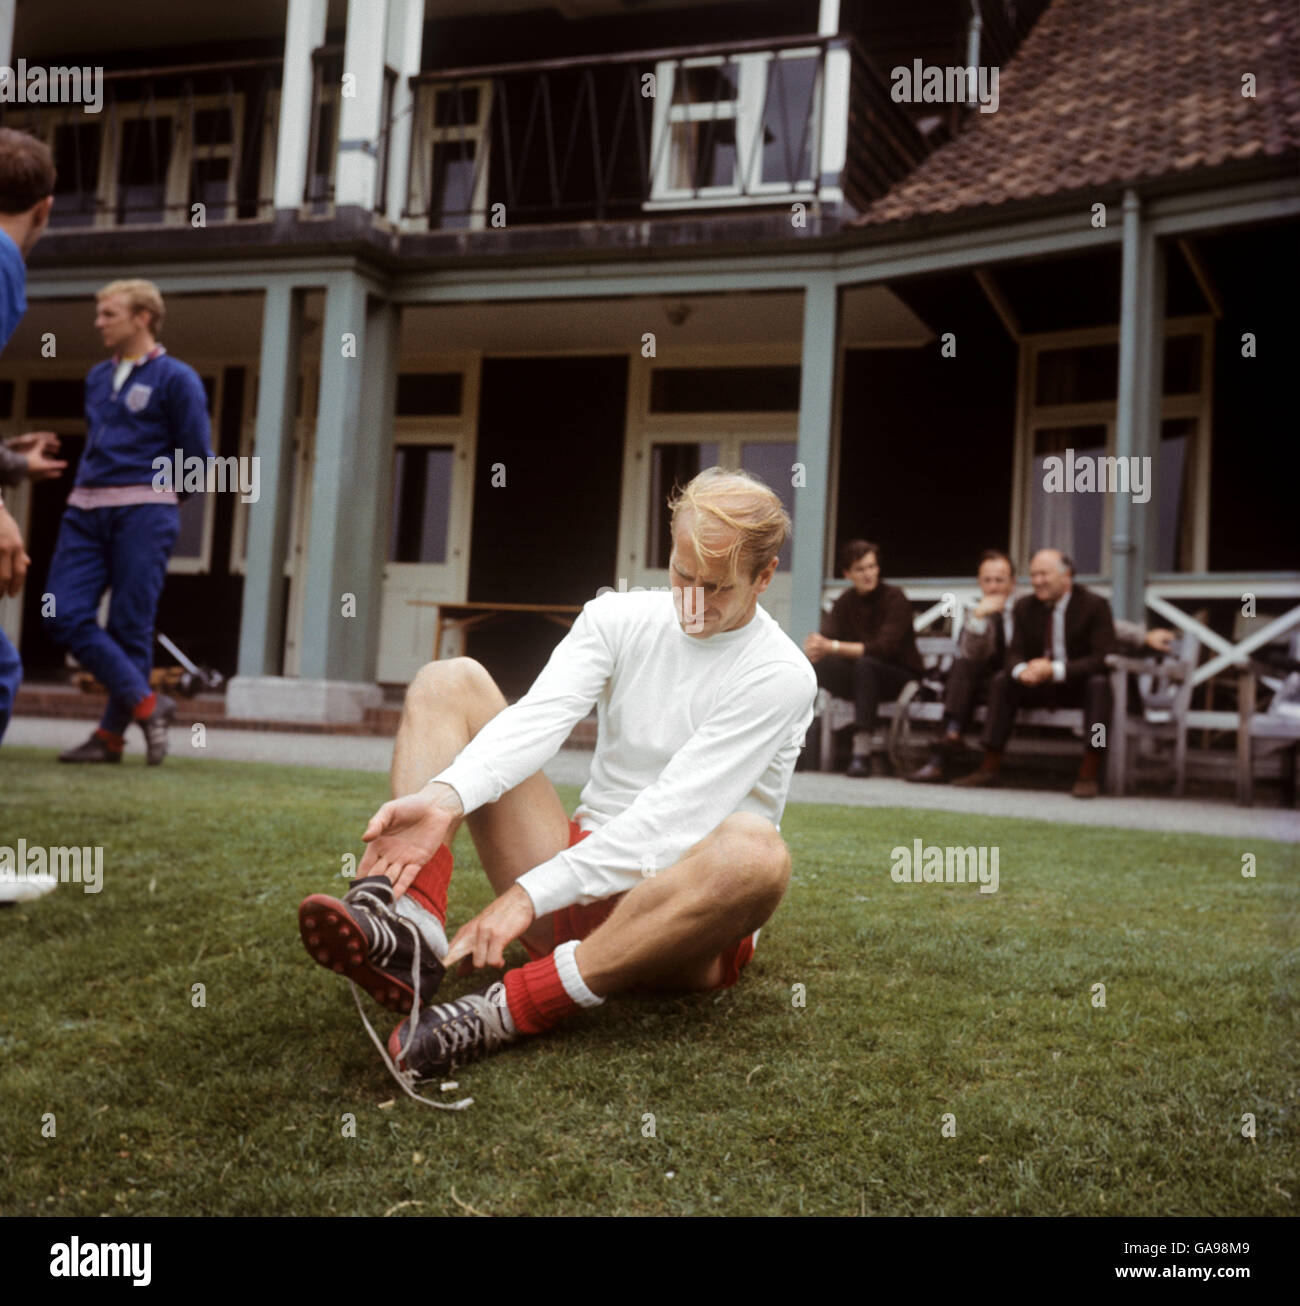 Football - coupe du monde Angleterre 1966 - entraînement d'Angleterre - Roehampton.Bobby Charlton, en Angleterre, se prépare à une séance d'entraînement de la coupe du monde à Roehampton, Londres Banque D'Images